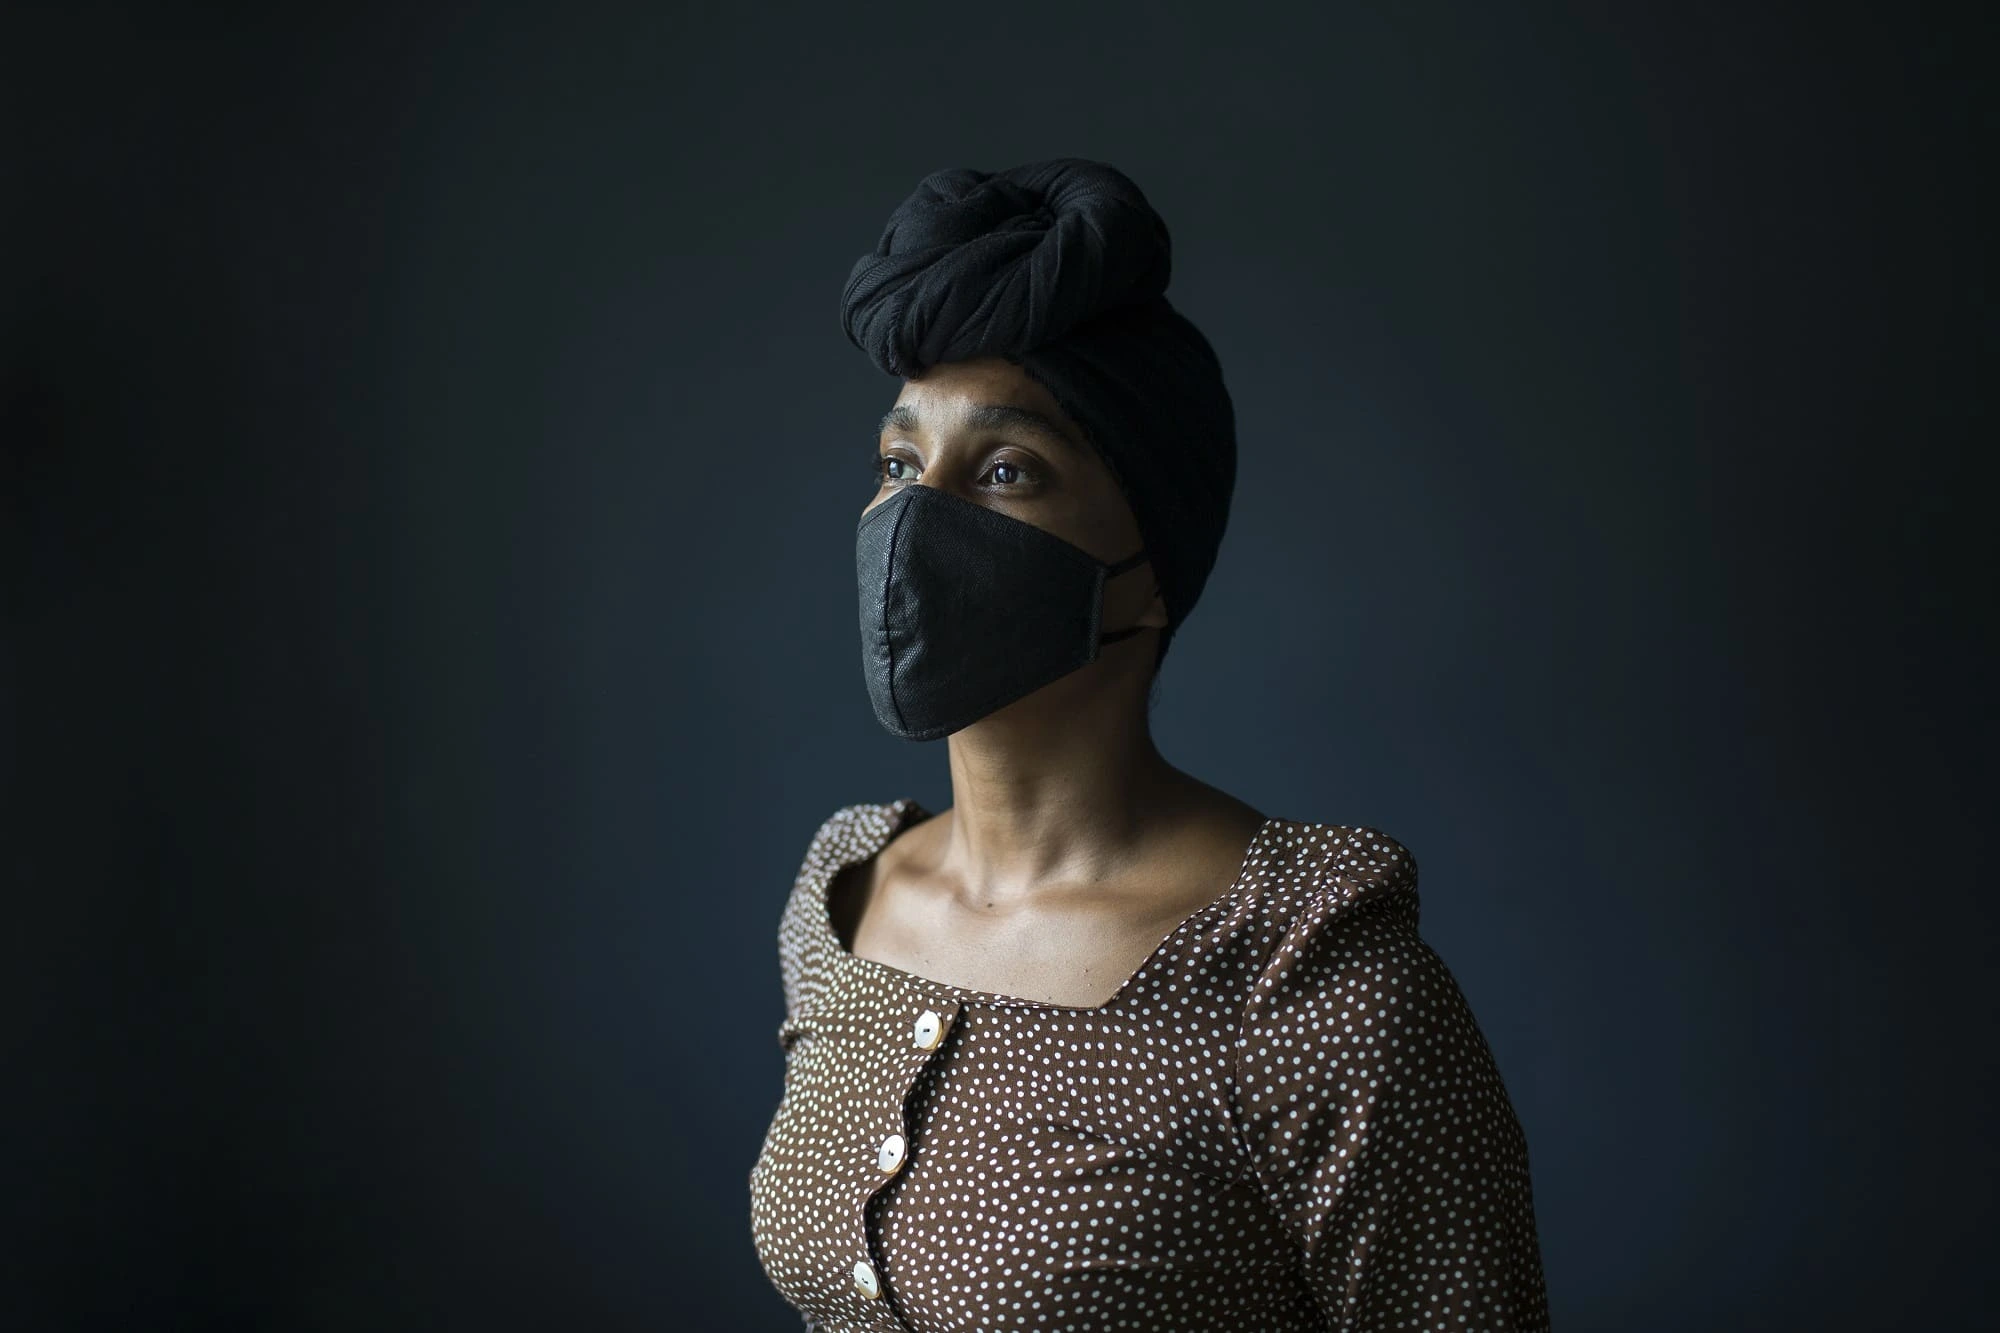 República Dominicana: Retrato de una pandemia​. Ana Valiño